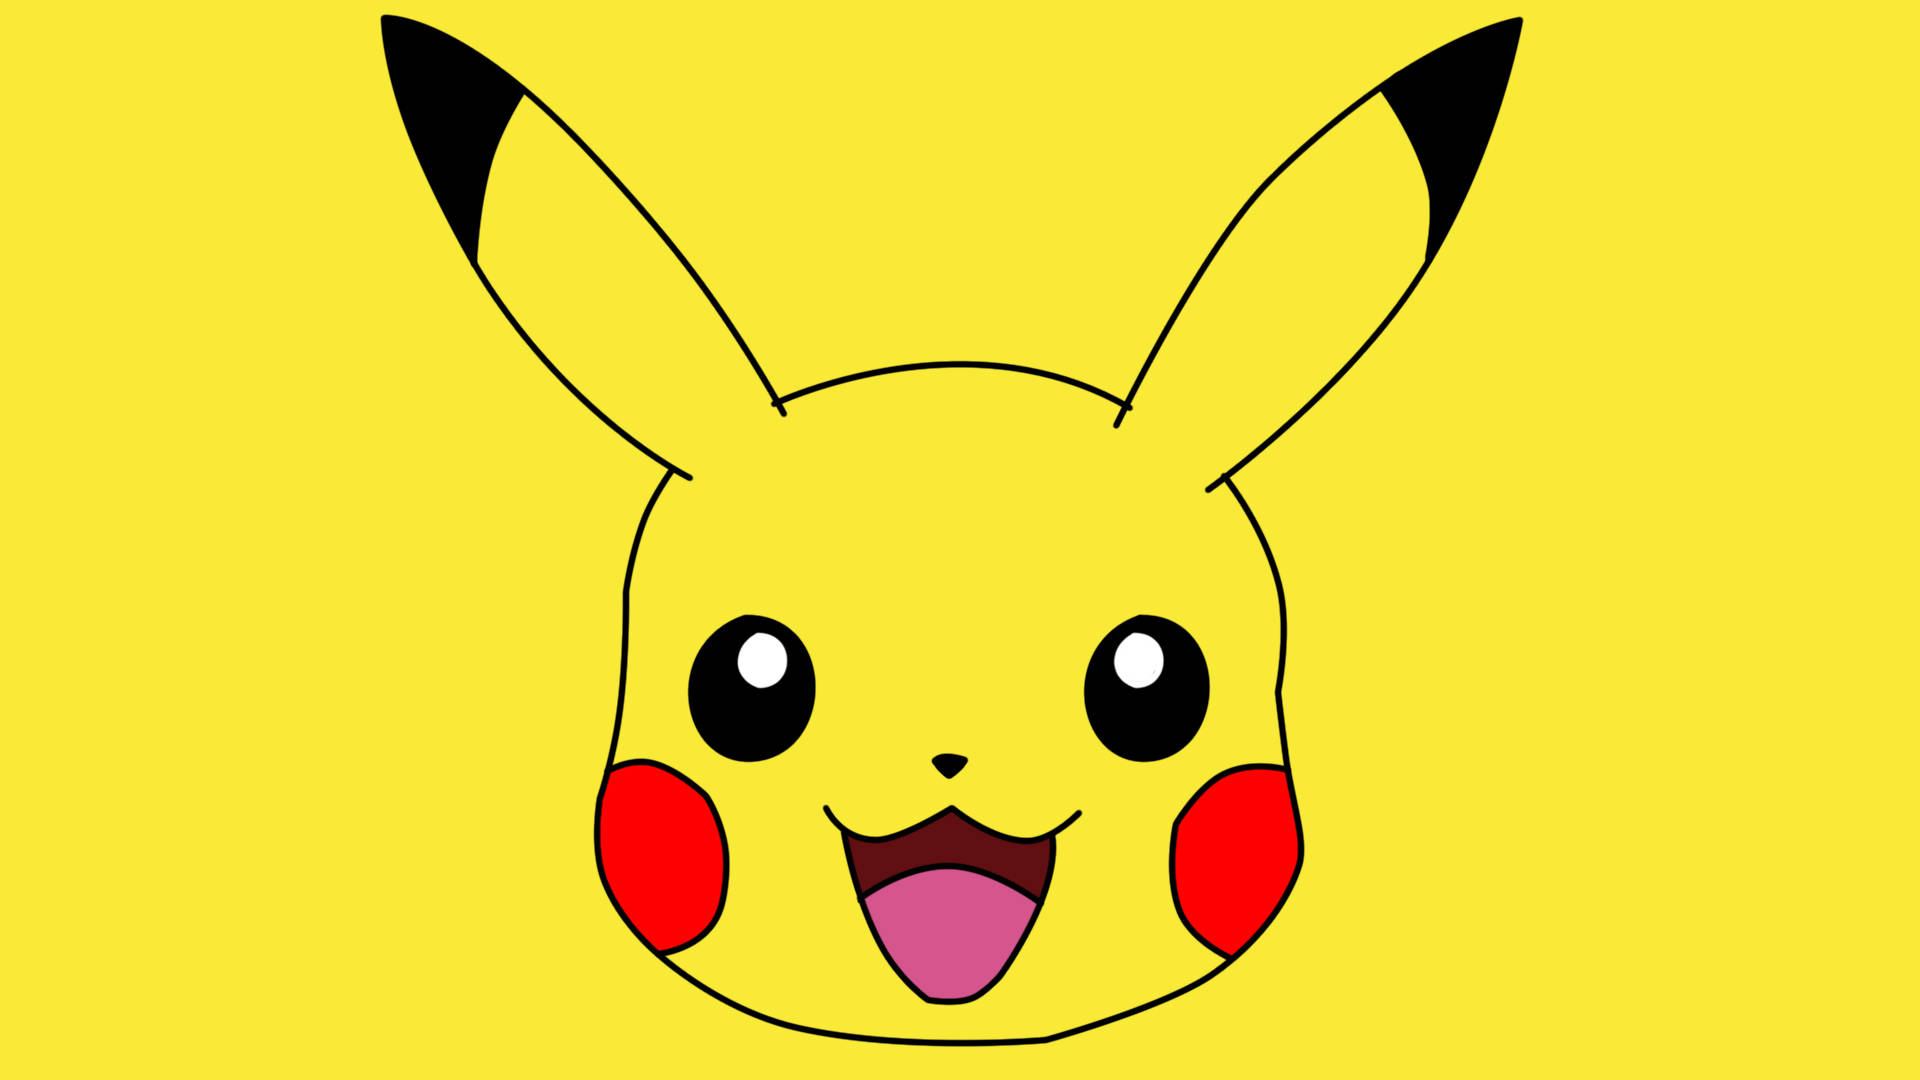 Hãy chiêm ngưỡng nền Cute Pikachu Background đáng yêu và nổi tiếng này! Những hình ảnh về Pikachu sẽ đem lại cho bạn nhiều niềm vui và cảm hứng. Hãy biến màn hình của bạn thành một điểm nhấn trong phòng của bạn với nền Cute Pikachu Background này!